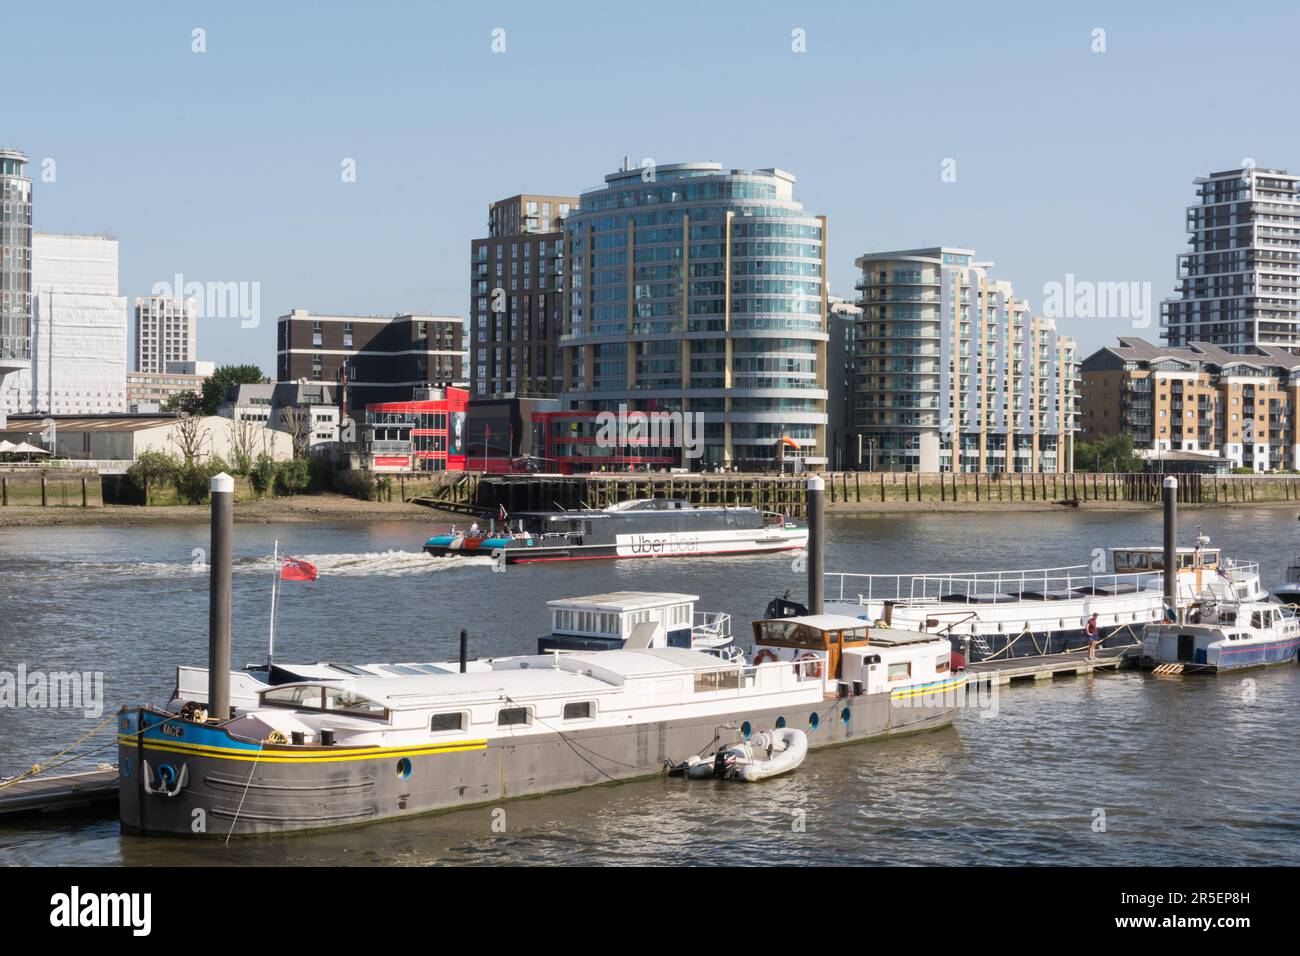 Ein Thames Clipper Uber Boot vorbei am London Heliport, Lombard Road, Battersea, London, SW11, England, Großbritannien Stockfoto